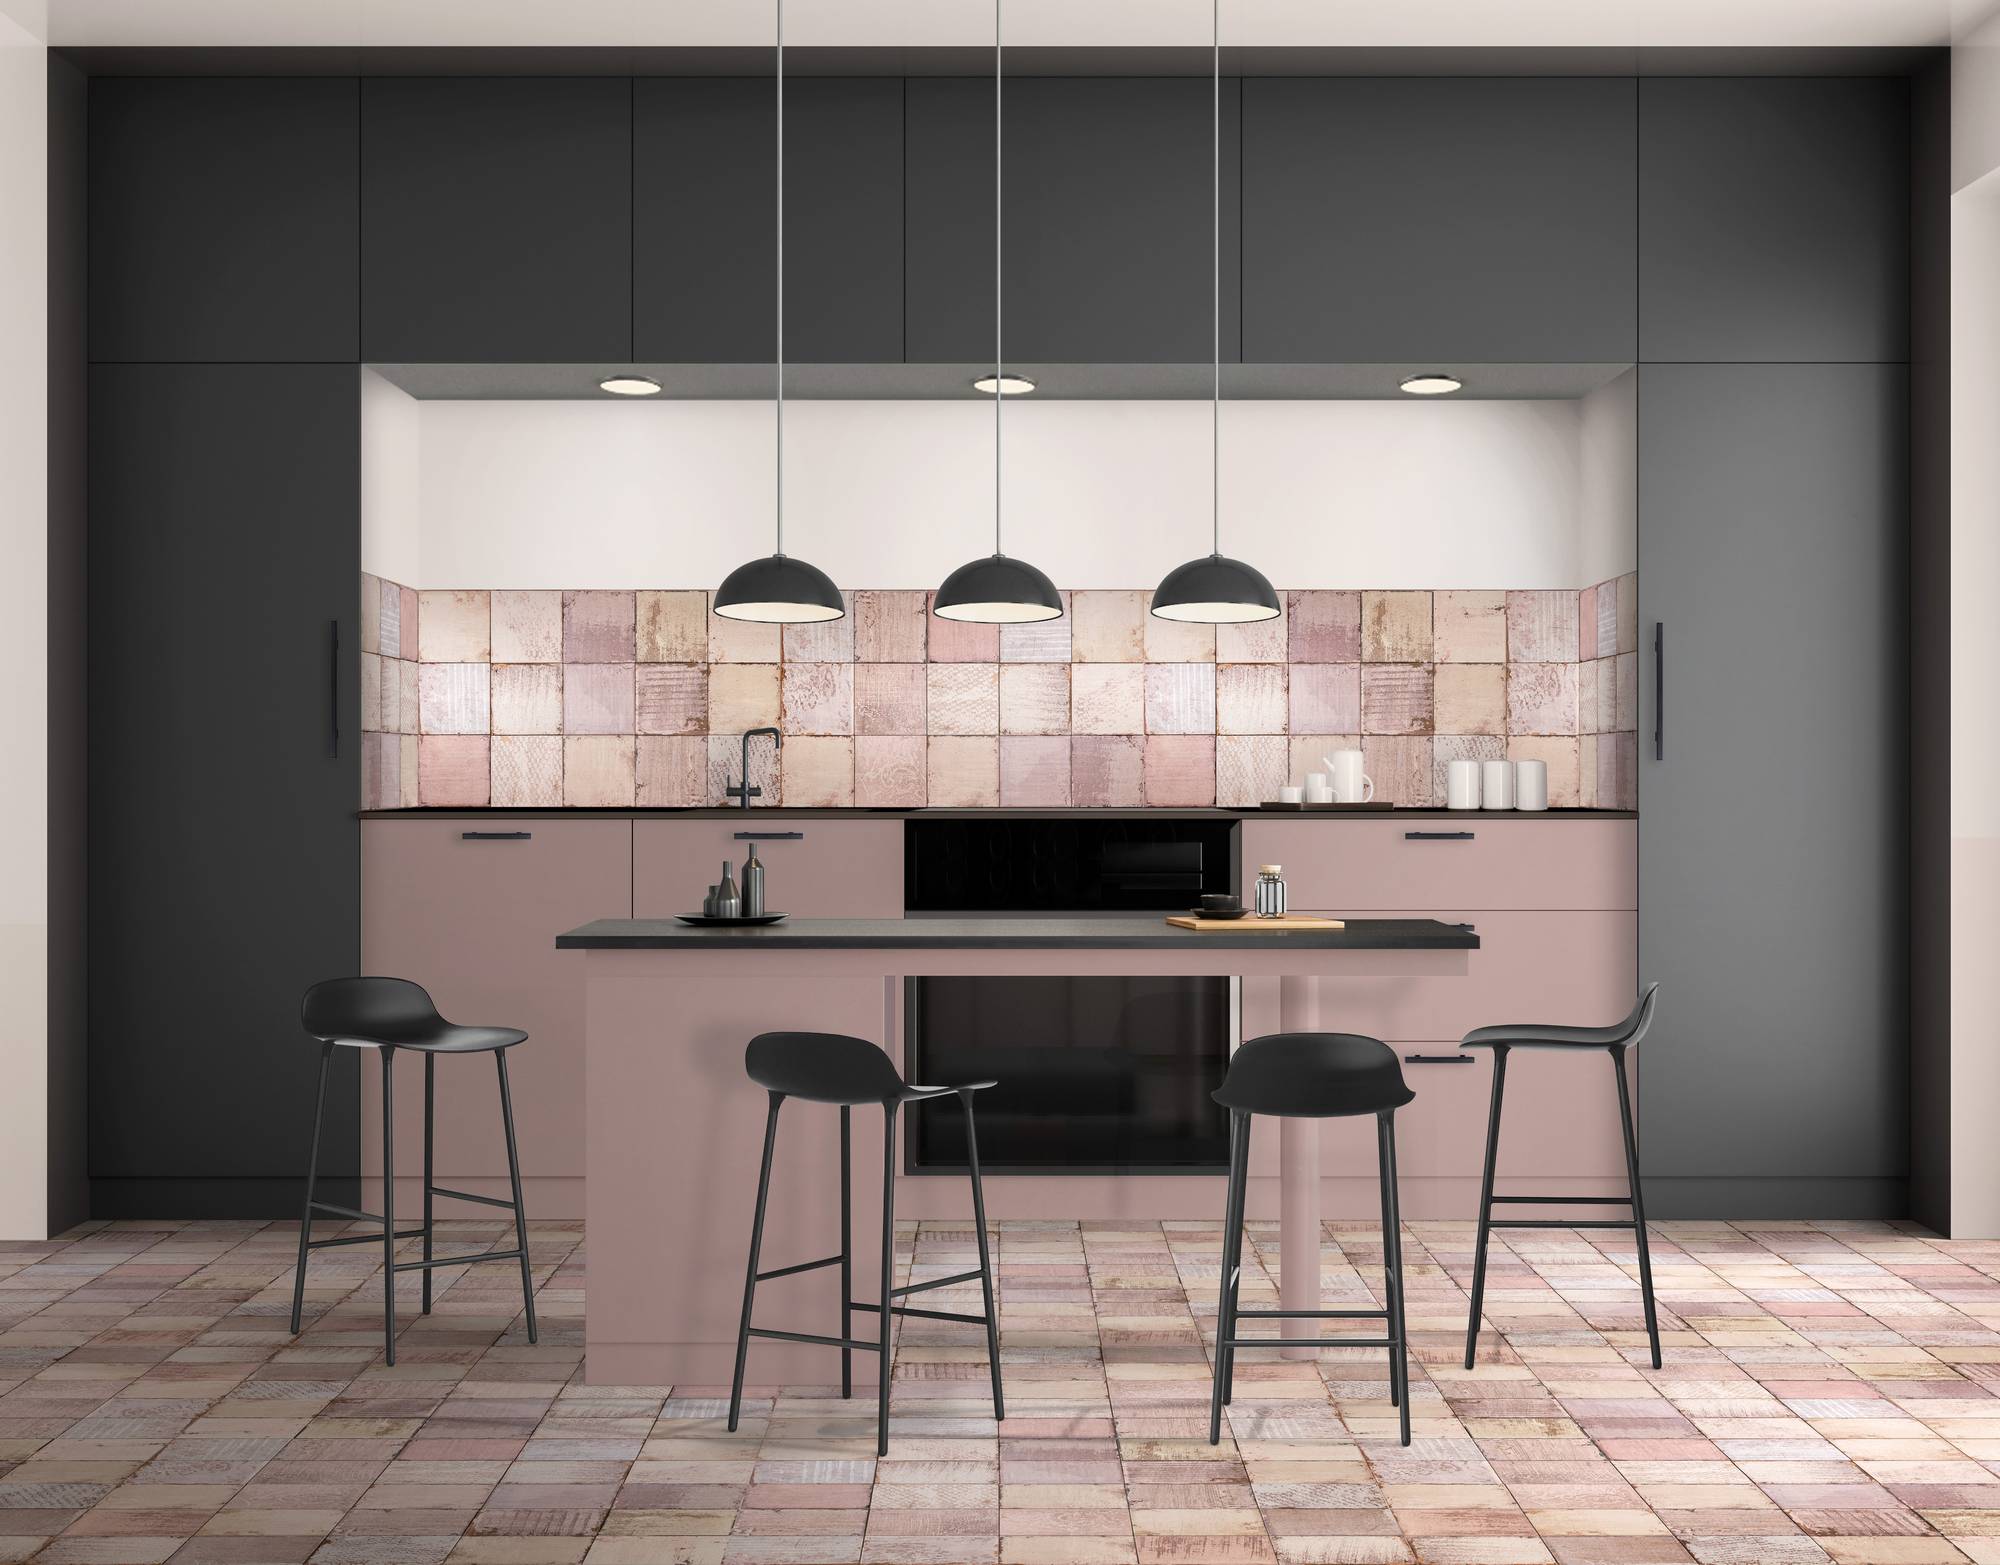 Modern bright kitchen interior. Minimalistic kitchen design with